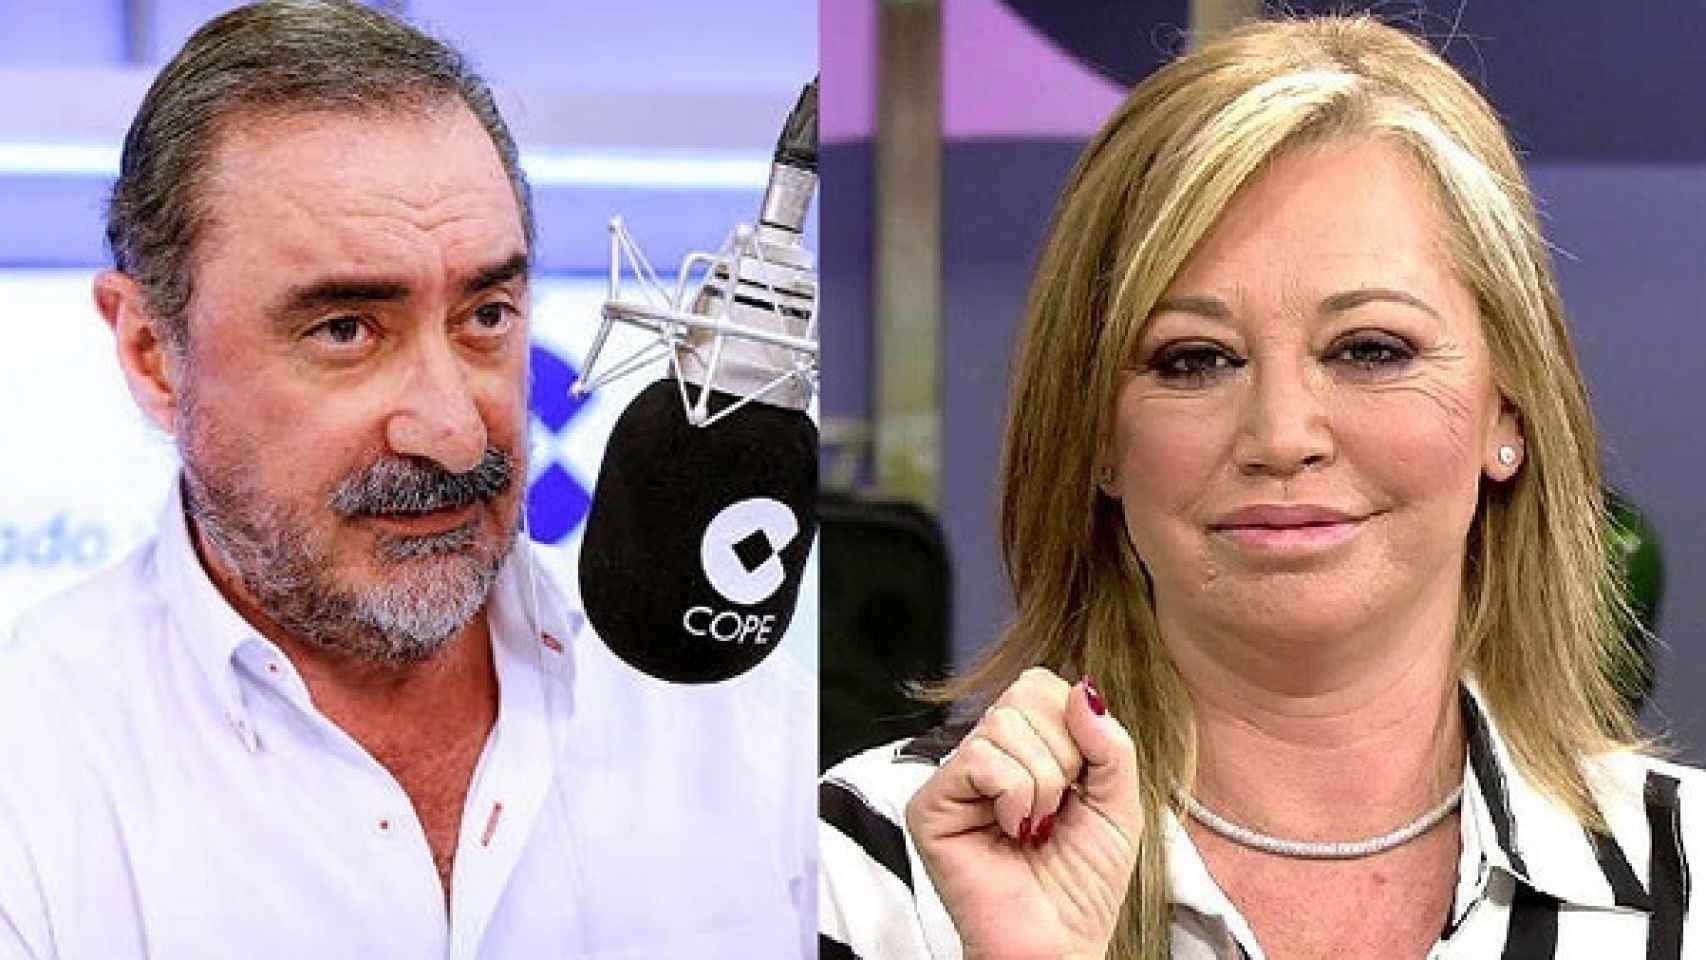 Carlos Herrera (COPE) y Belén Esteban (Telecinco)